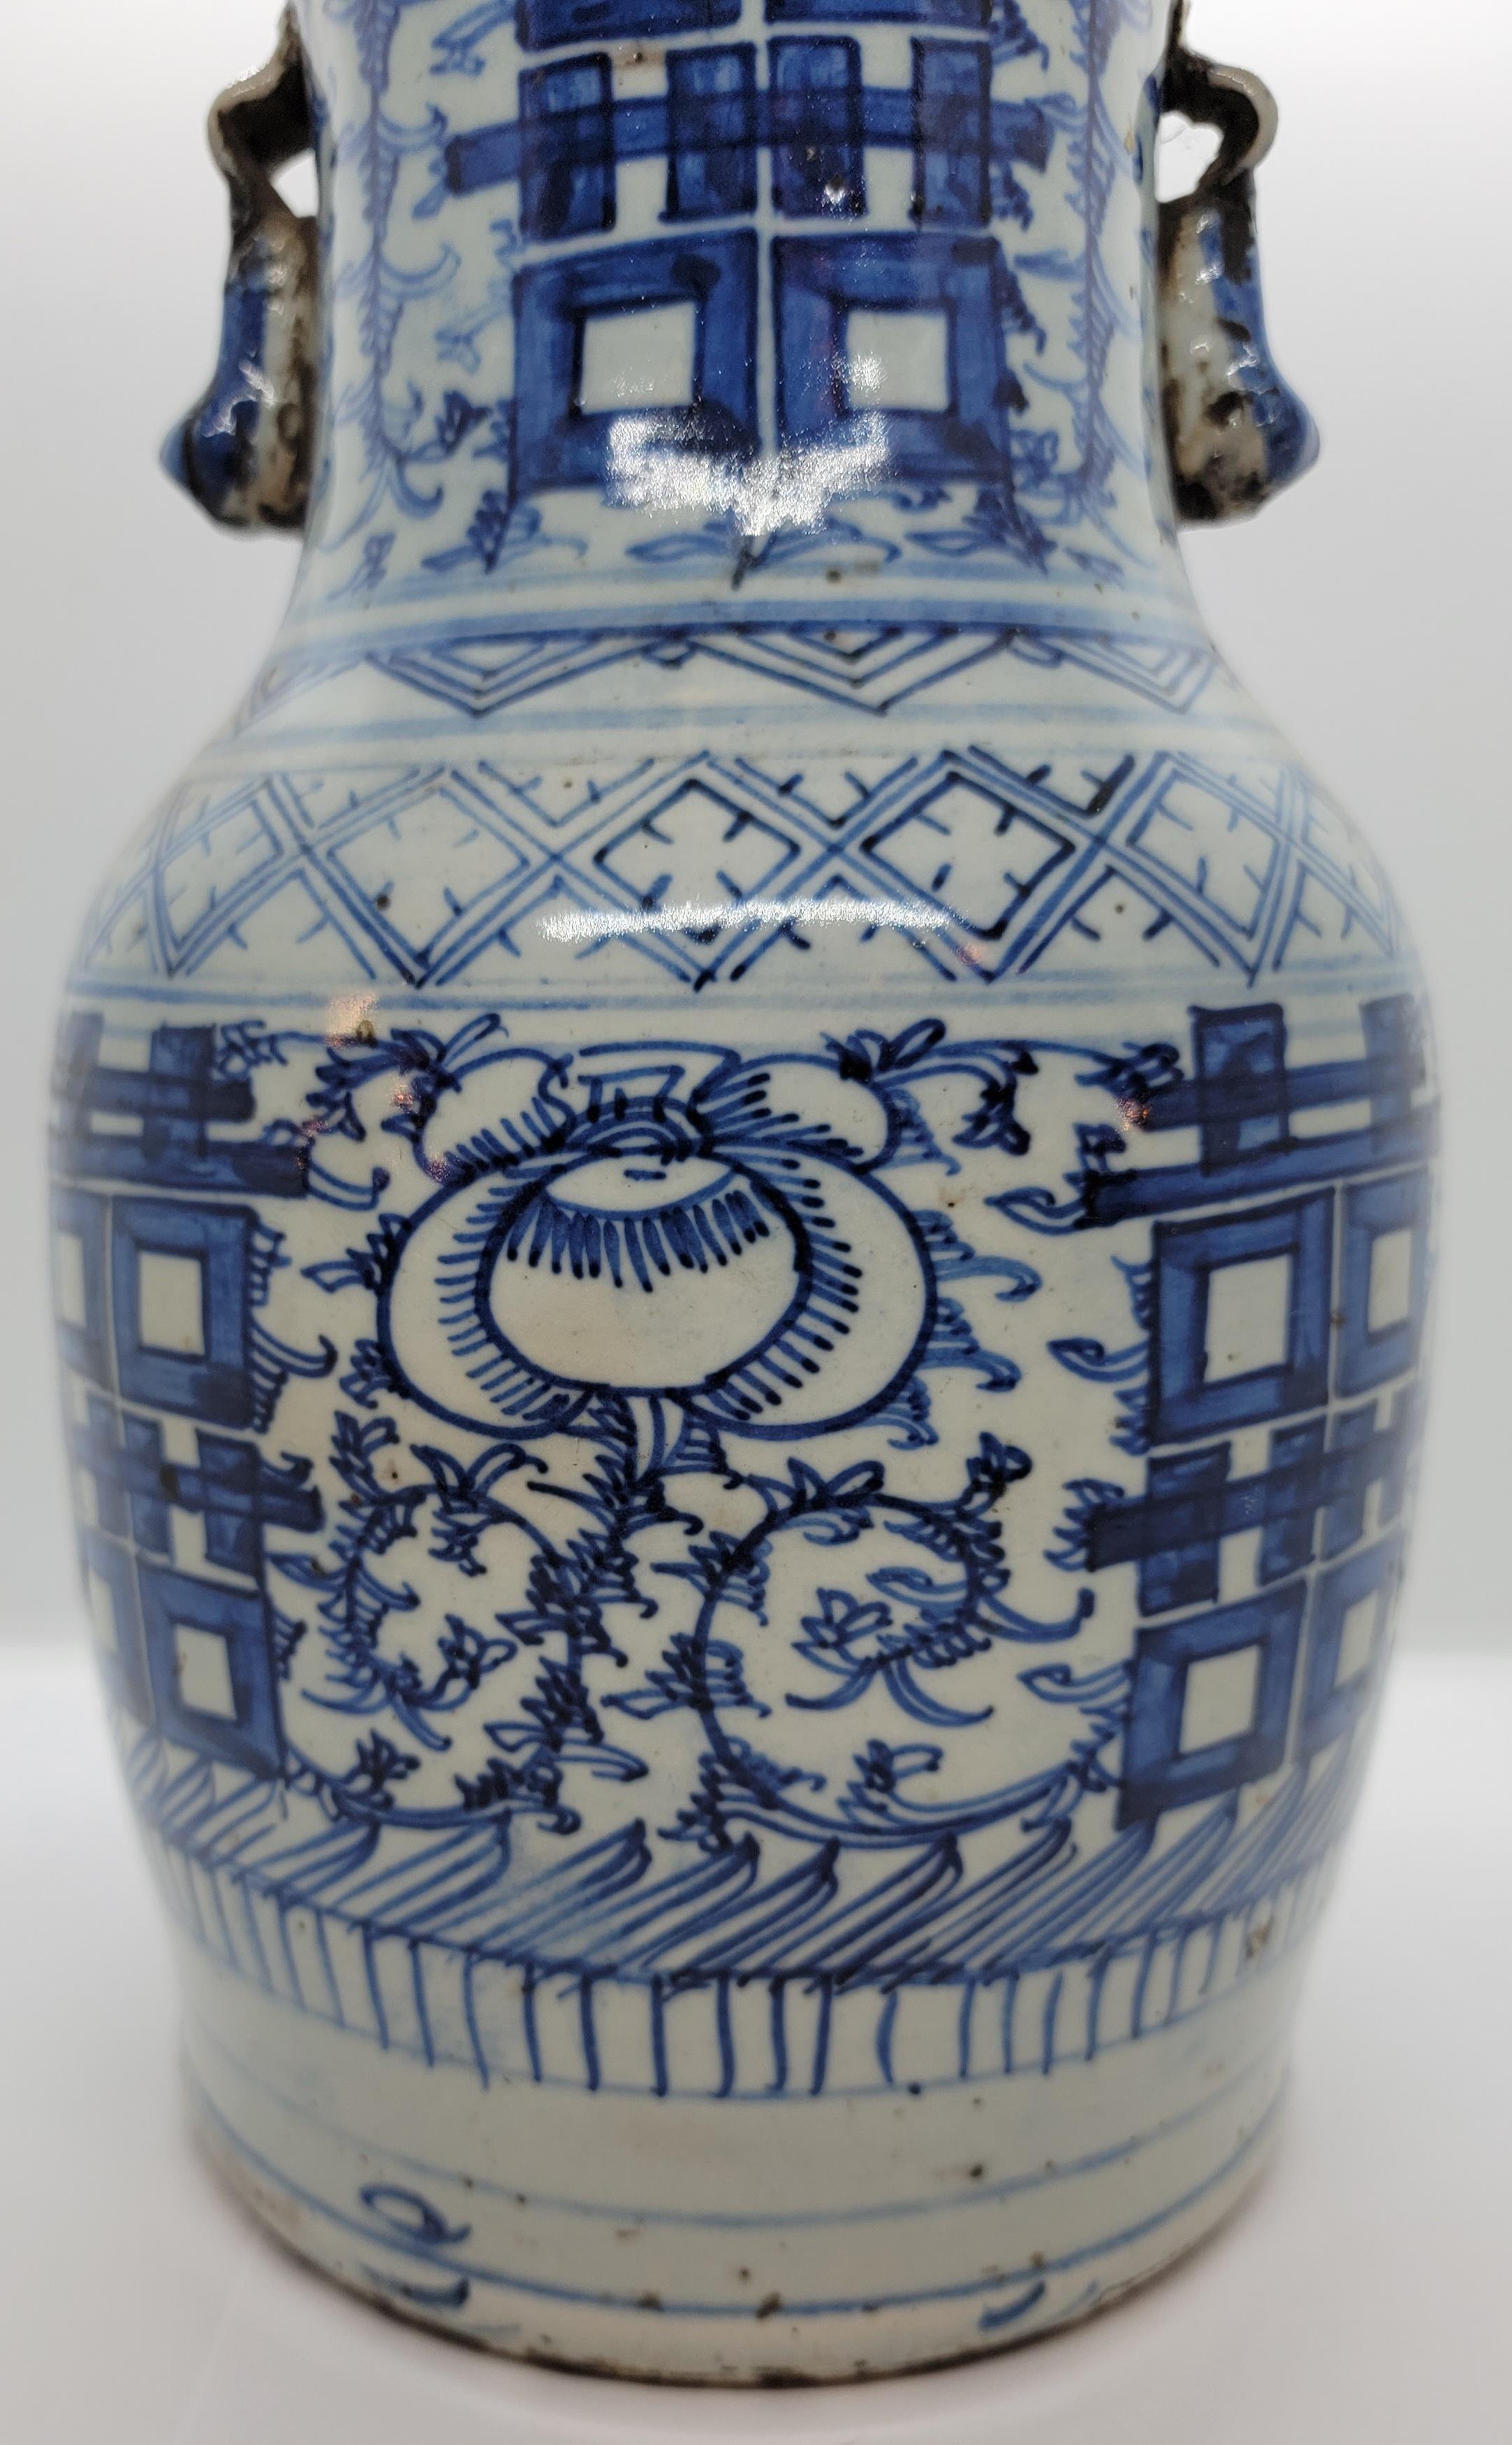 Vase de mariage en poterie orientale du 19e siècle . Magnifique âge et patine, les poignées sont petites, serrées et solides. Le vase présente des traces d'usure dues à l'âge. Merveilleux motif bleu foncé de couleur cobalt.

env. 12,5 h x 7